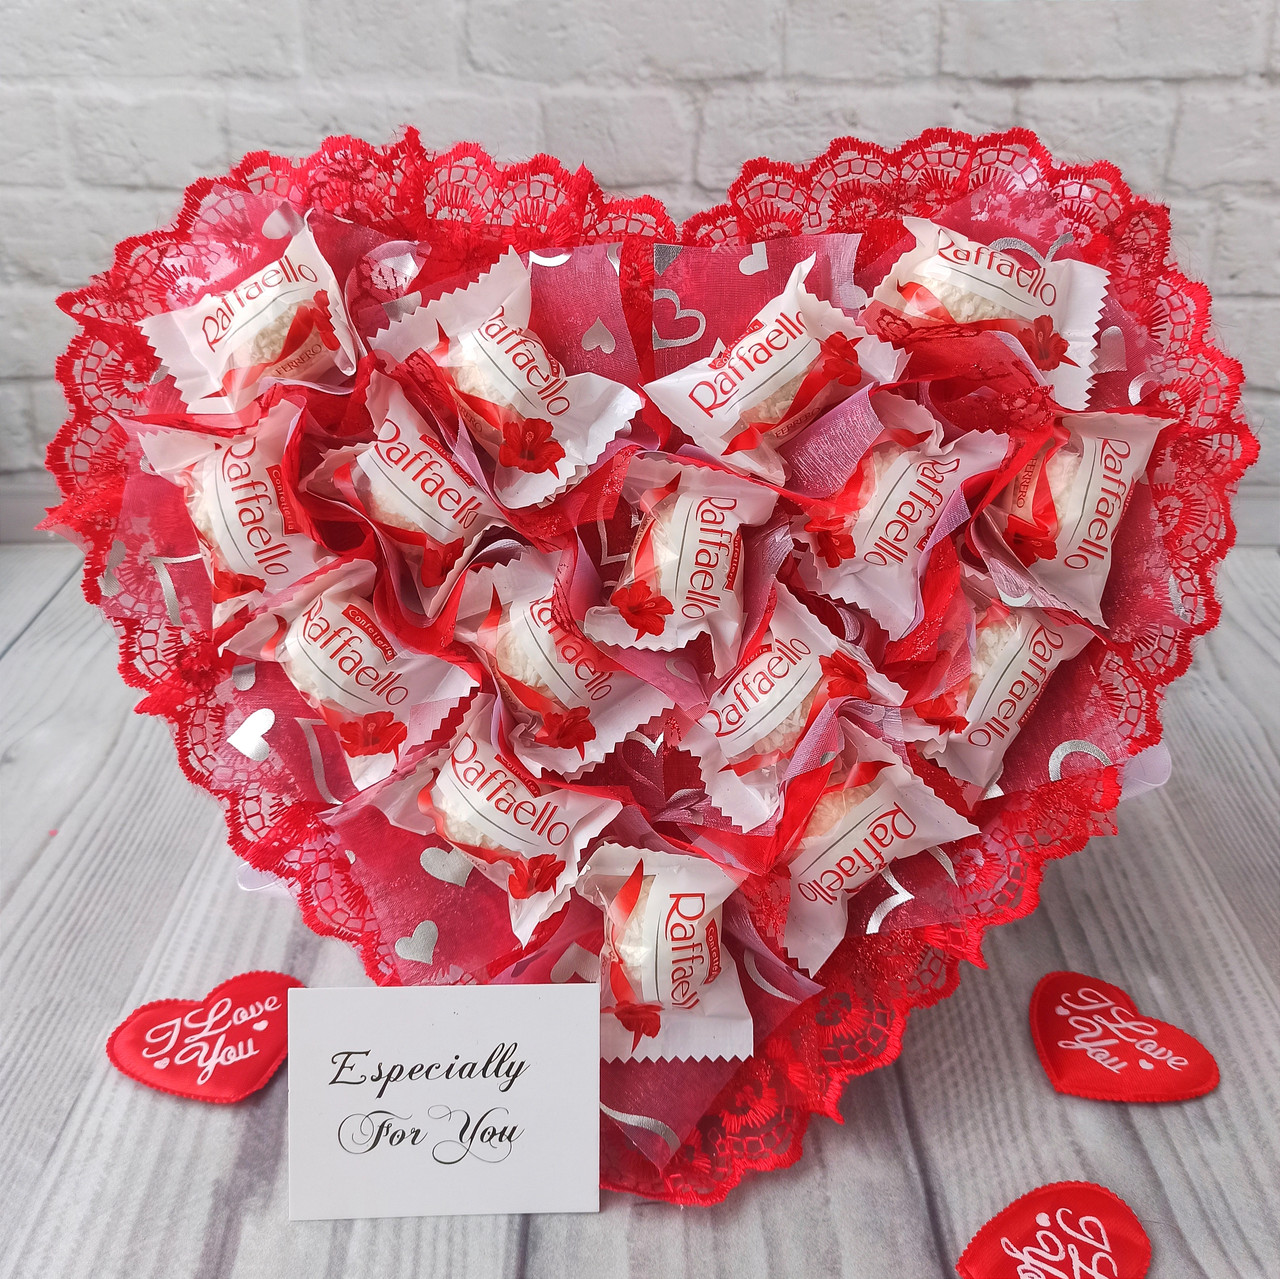 Червоний букет із цукерками Rafaello, в формі серця Рафаелло подарунок для дівчини чи жінки на день закоханих